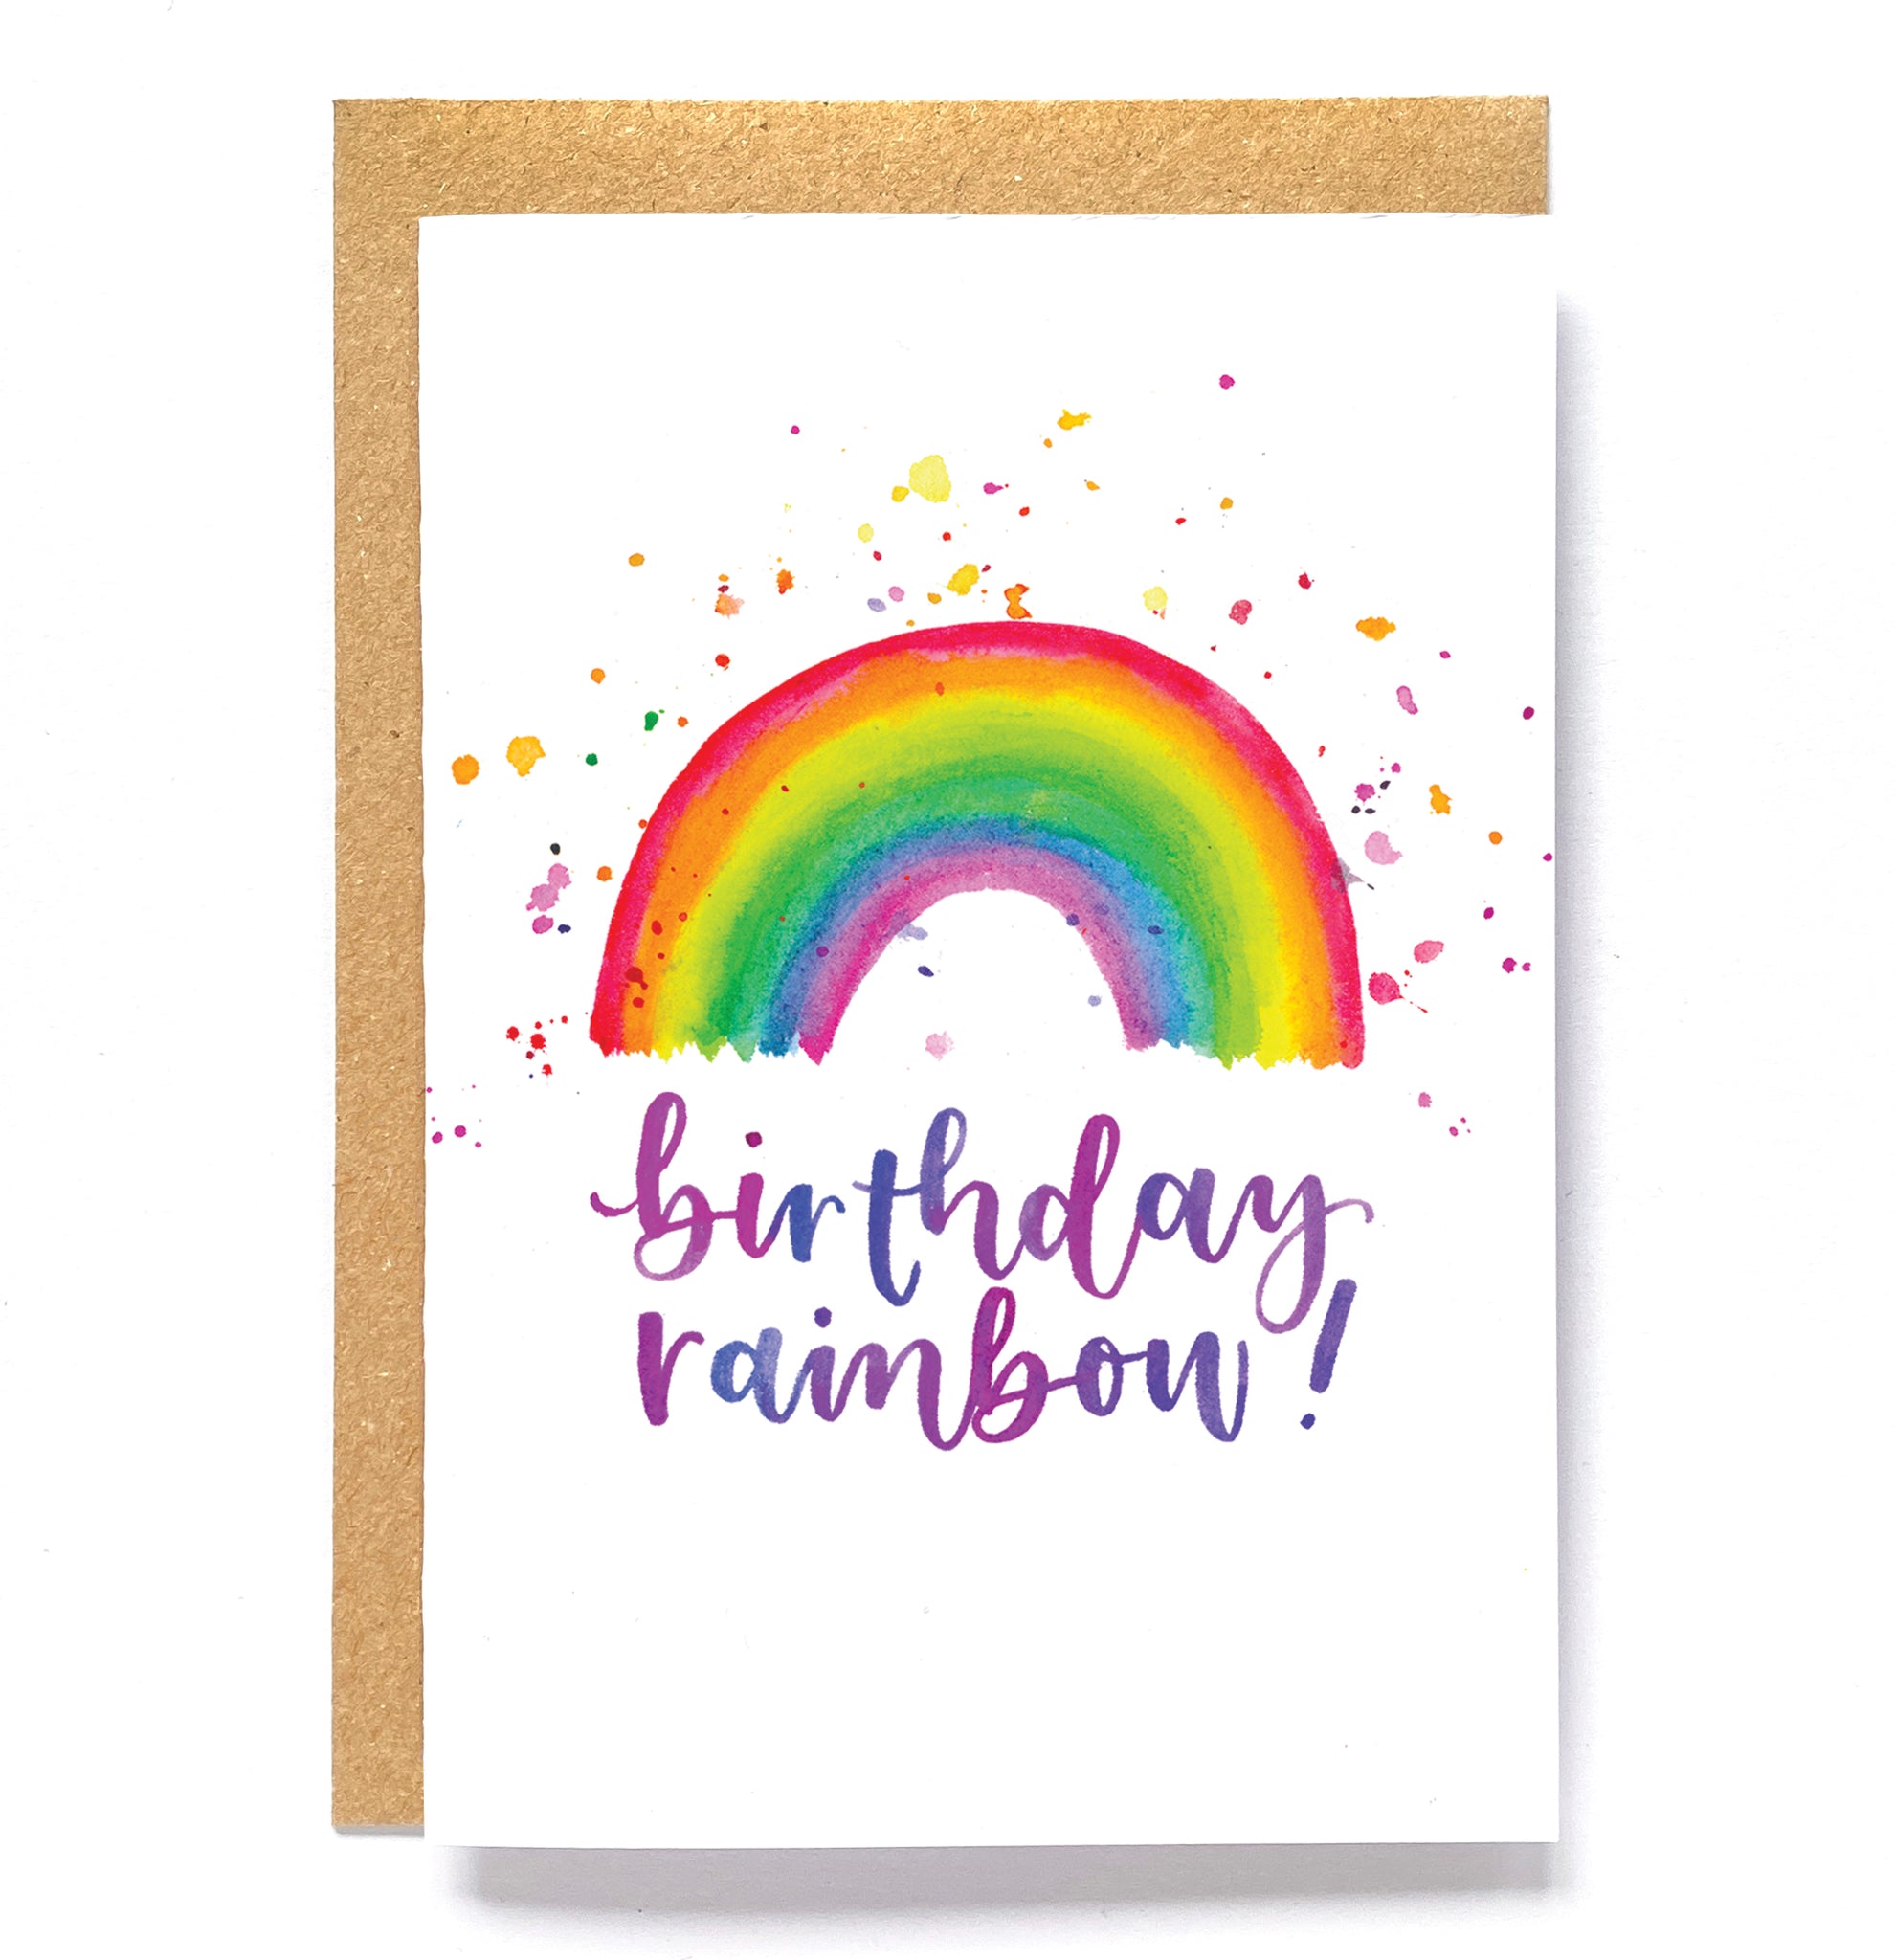 Rainbow, fun birthday card: 'Birthday rainbow!'